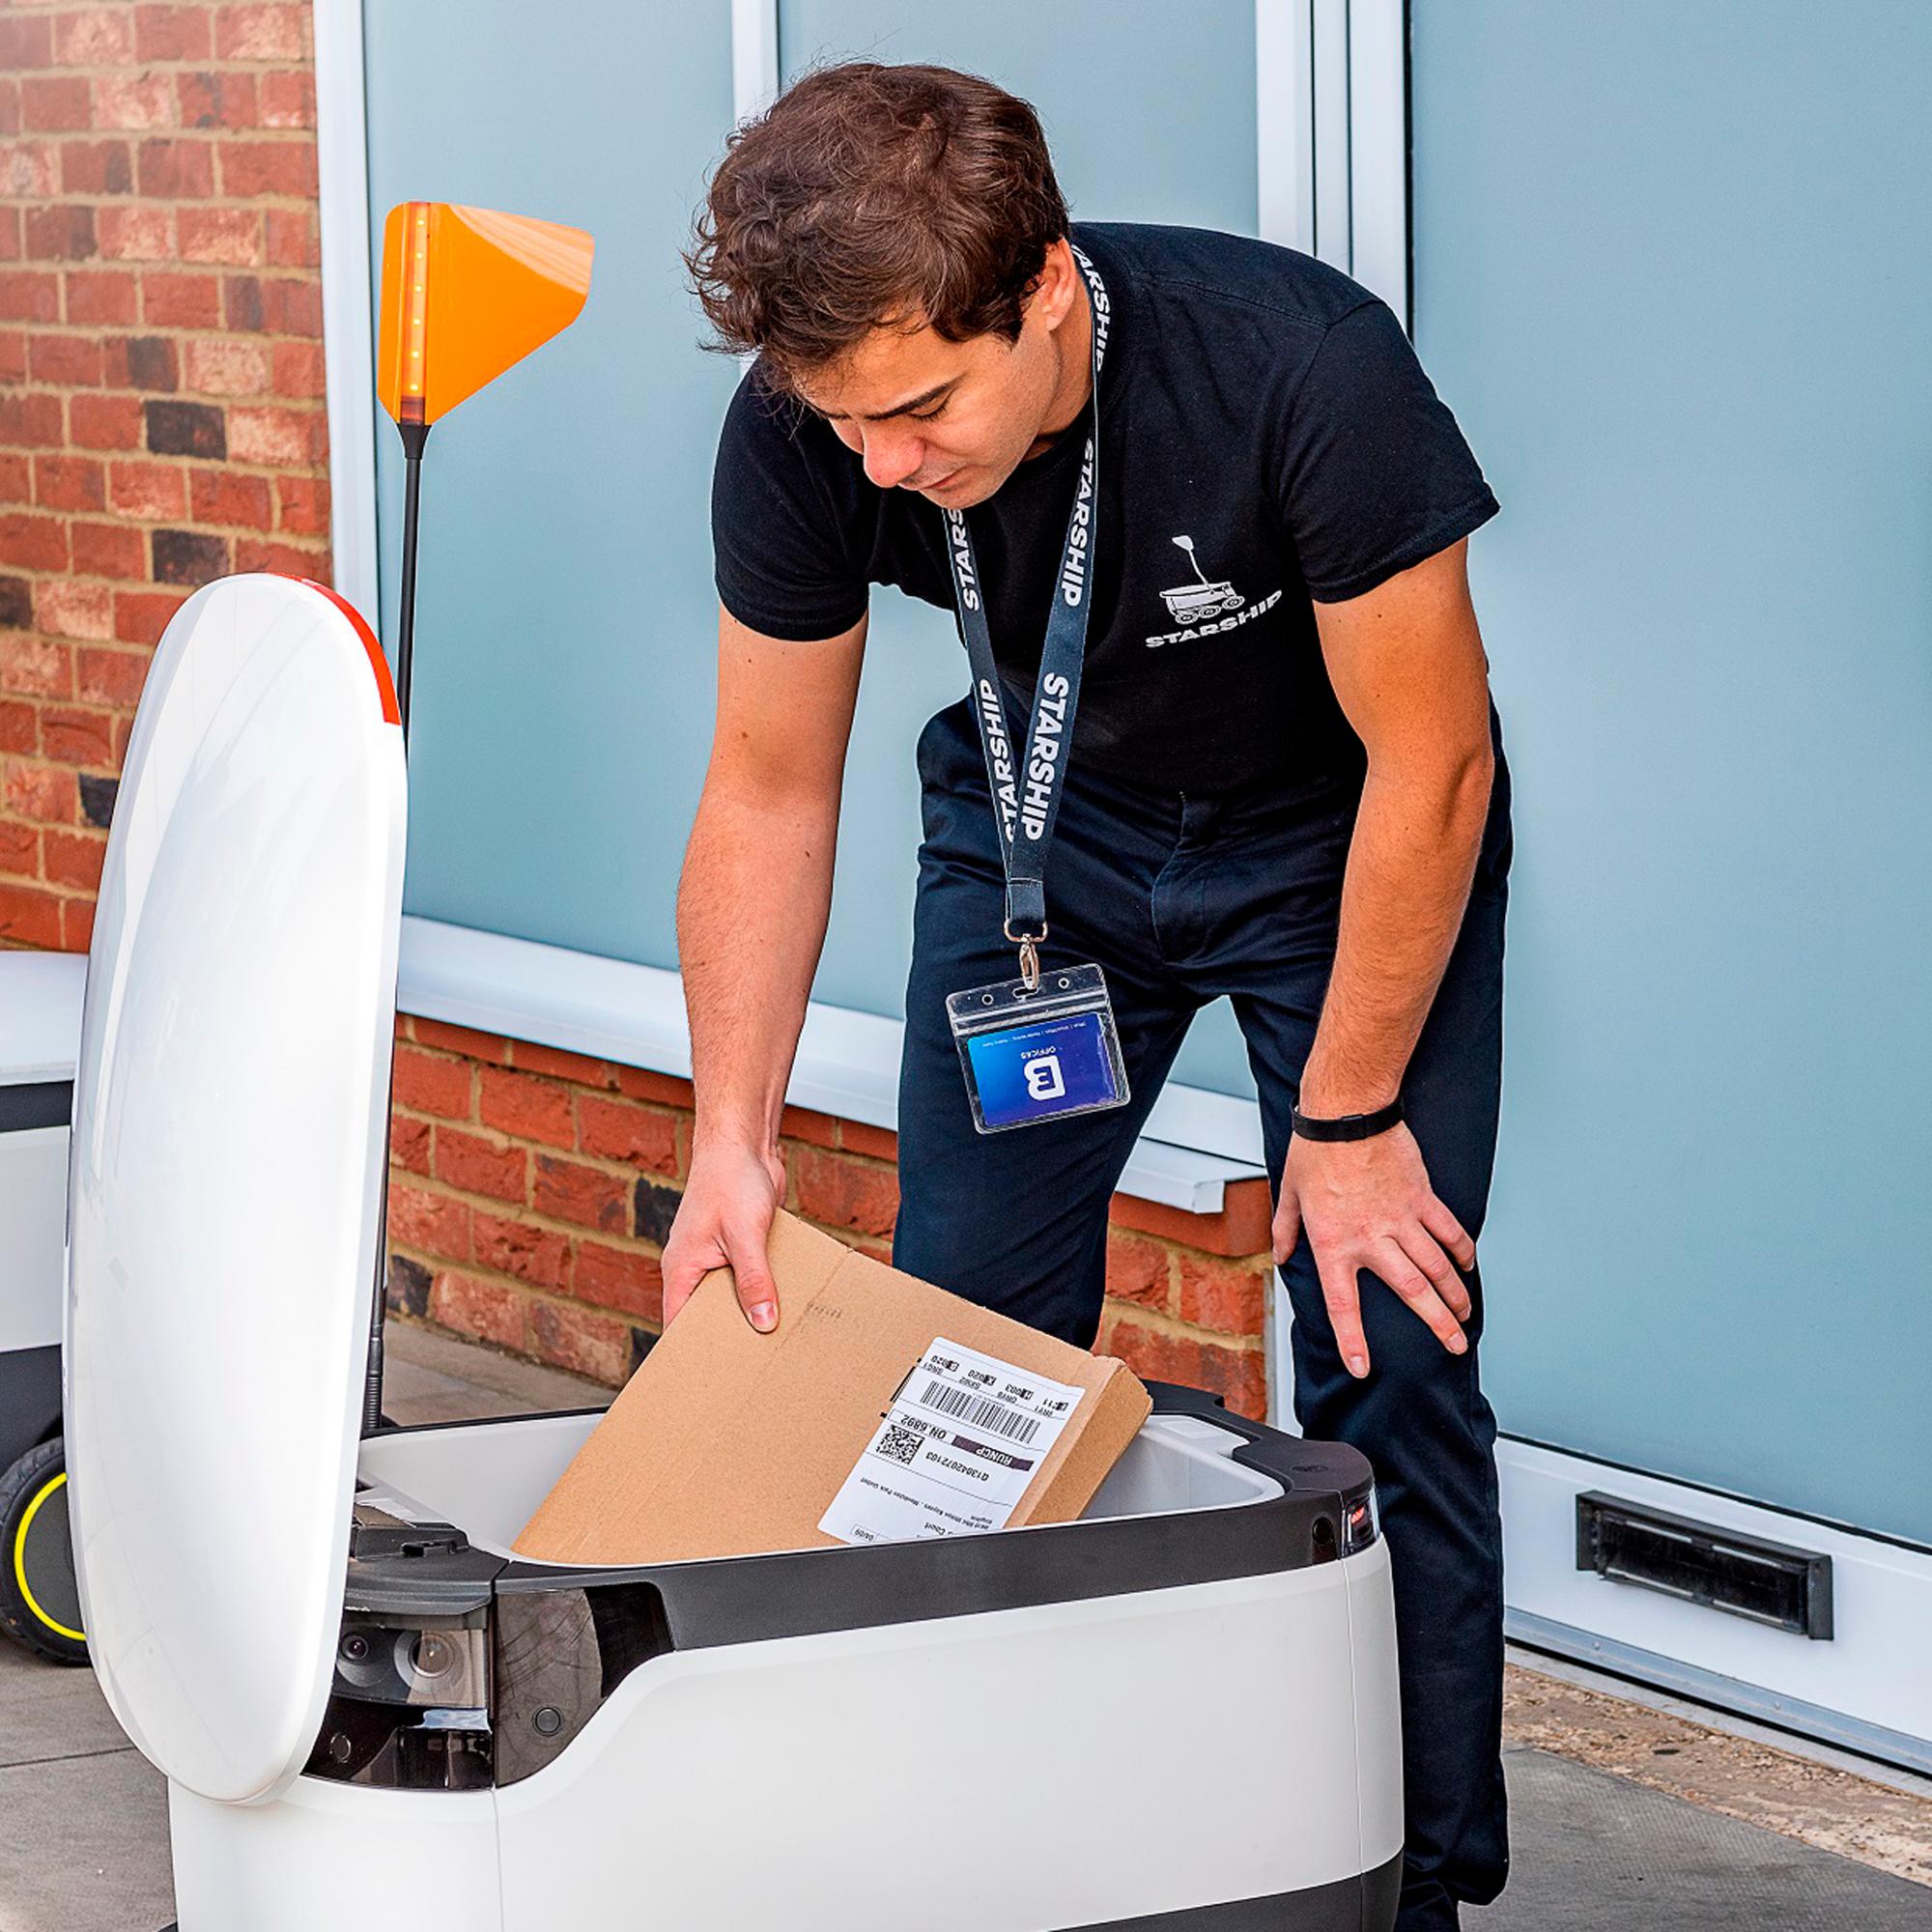 Un operario de la firma tecnológica carga al robot con un paquete para su reparto inmediato.